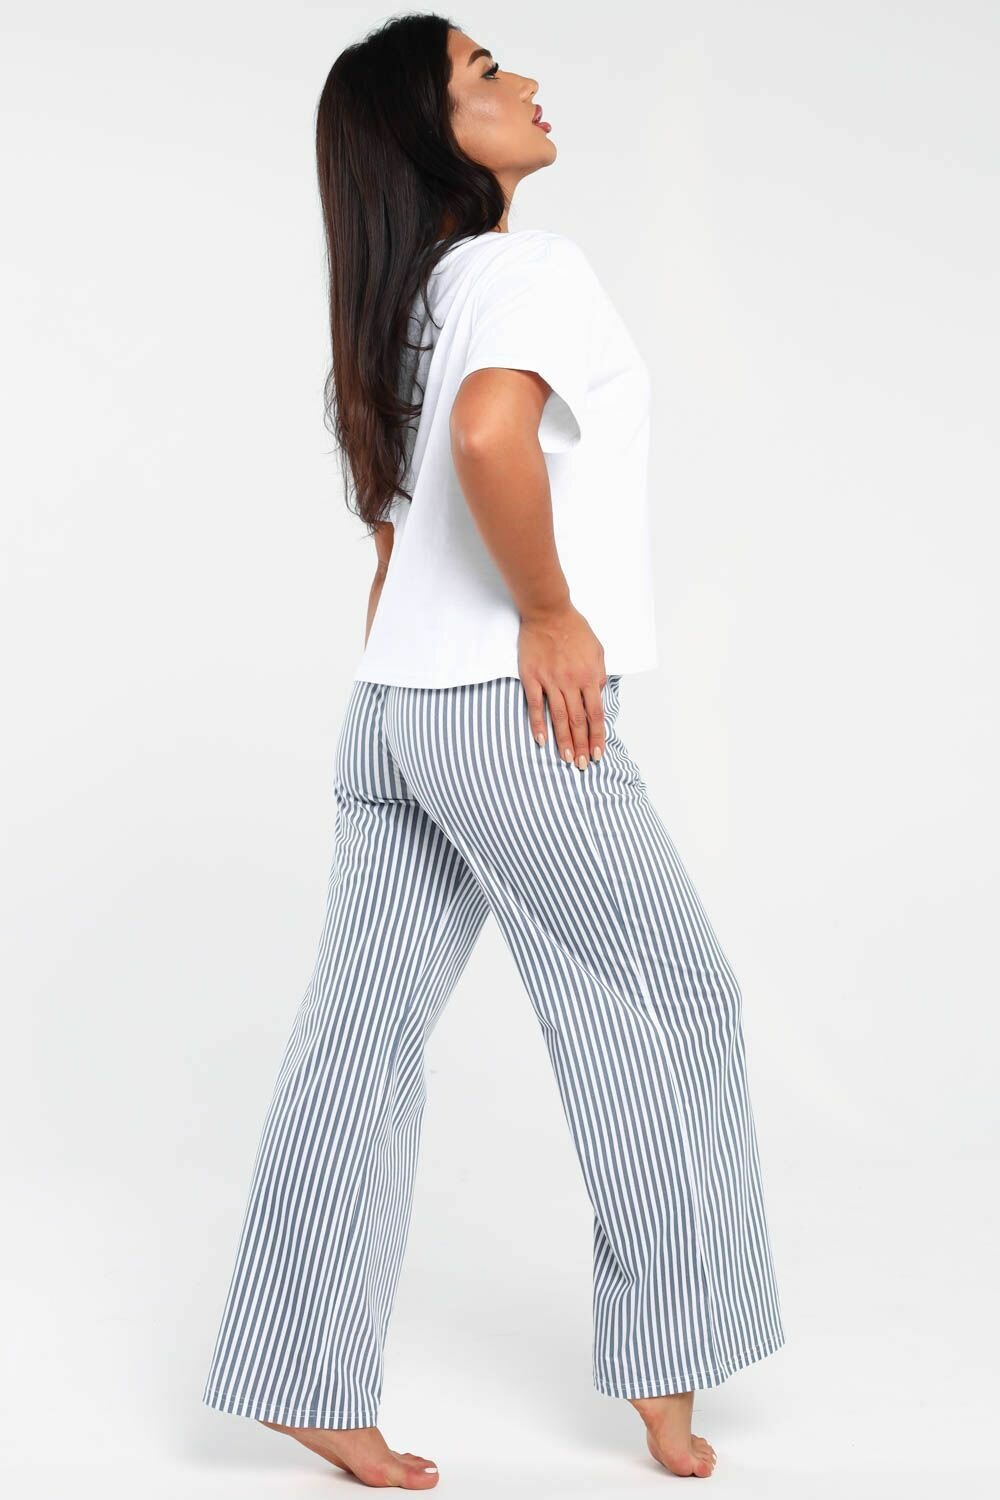 Пижама DIANIDA М-799 размеры 44-54 (48, светло-серый) - фотография № 10